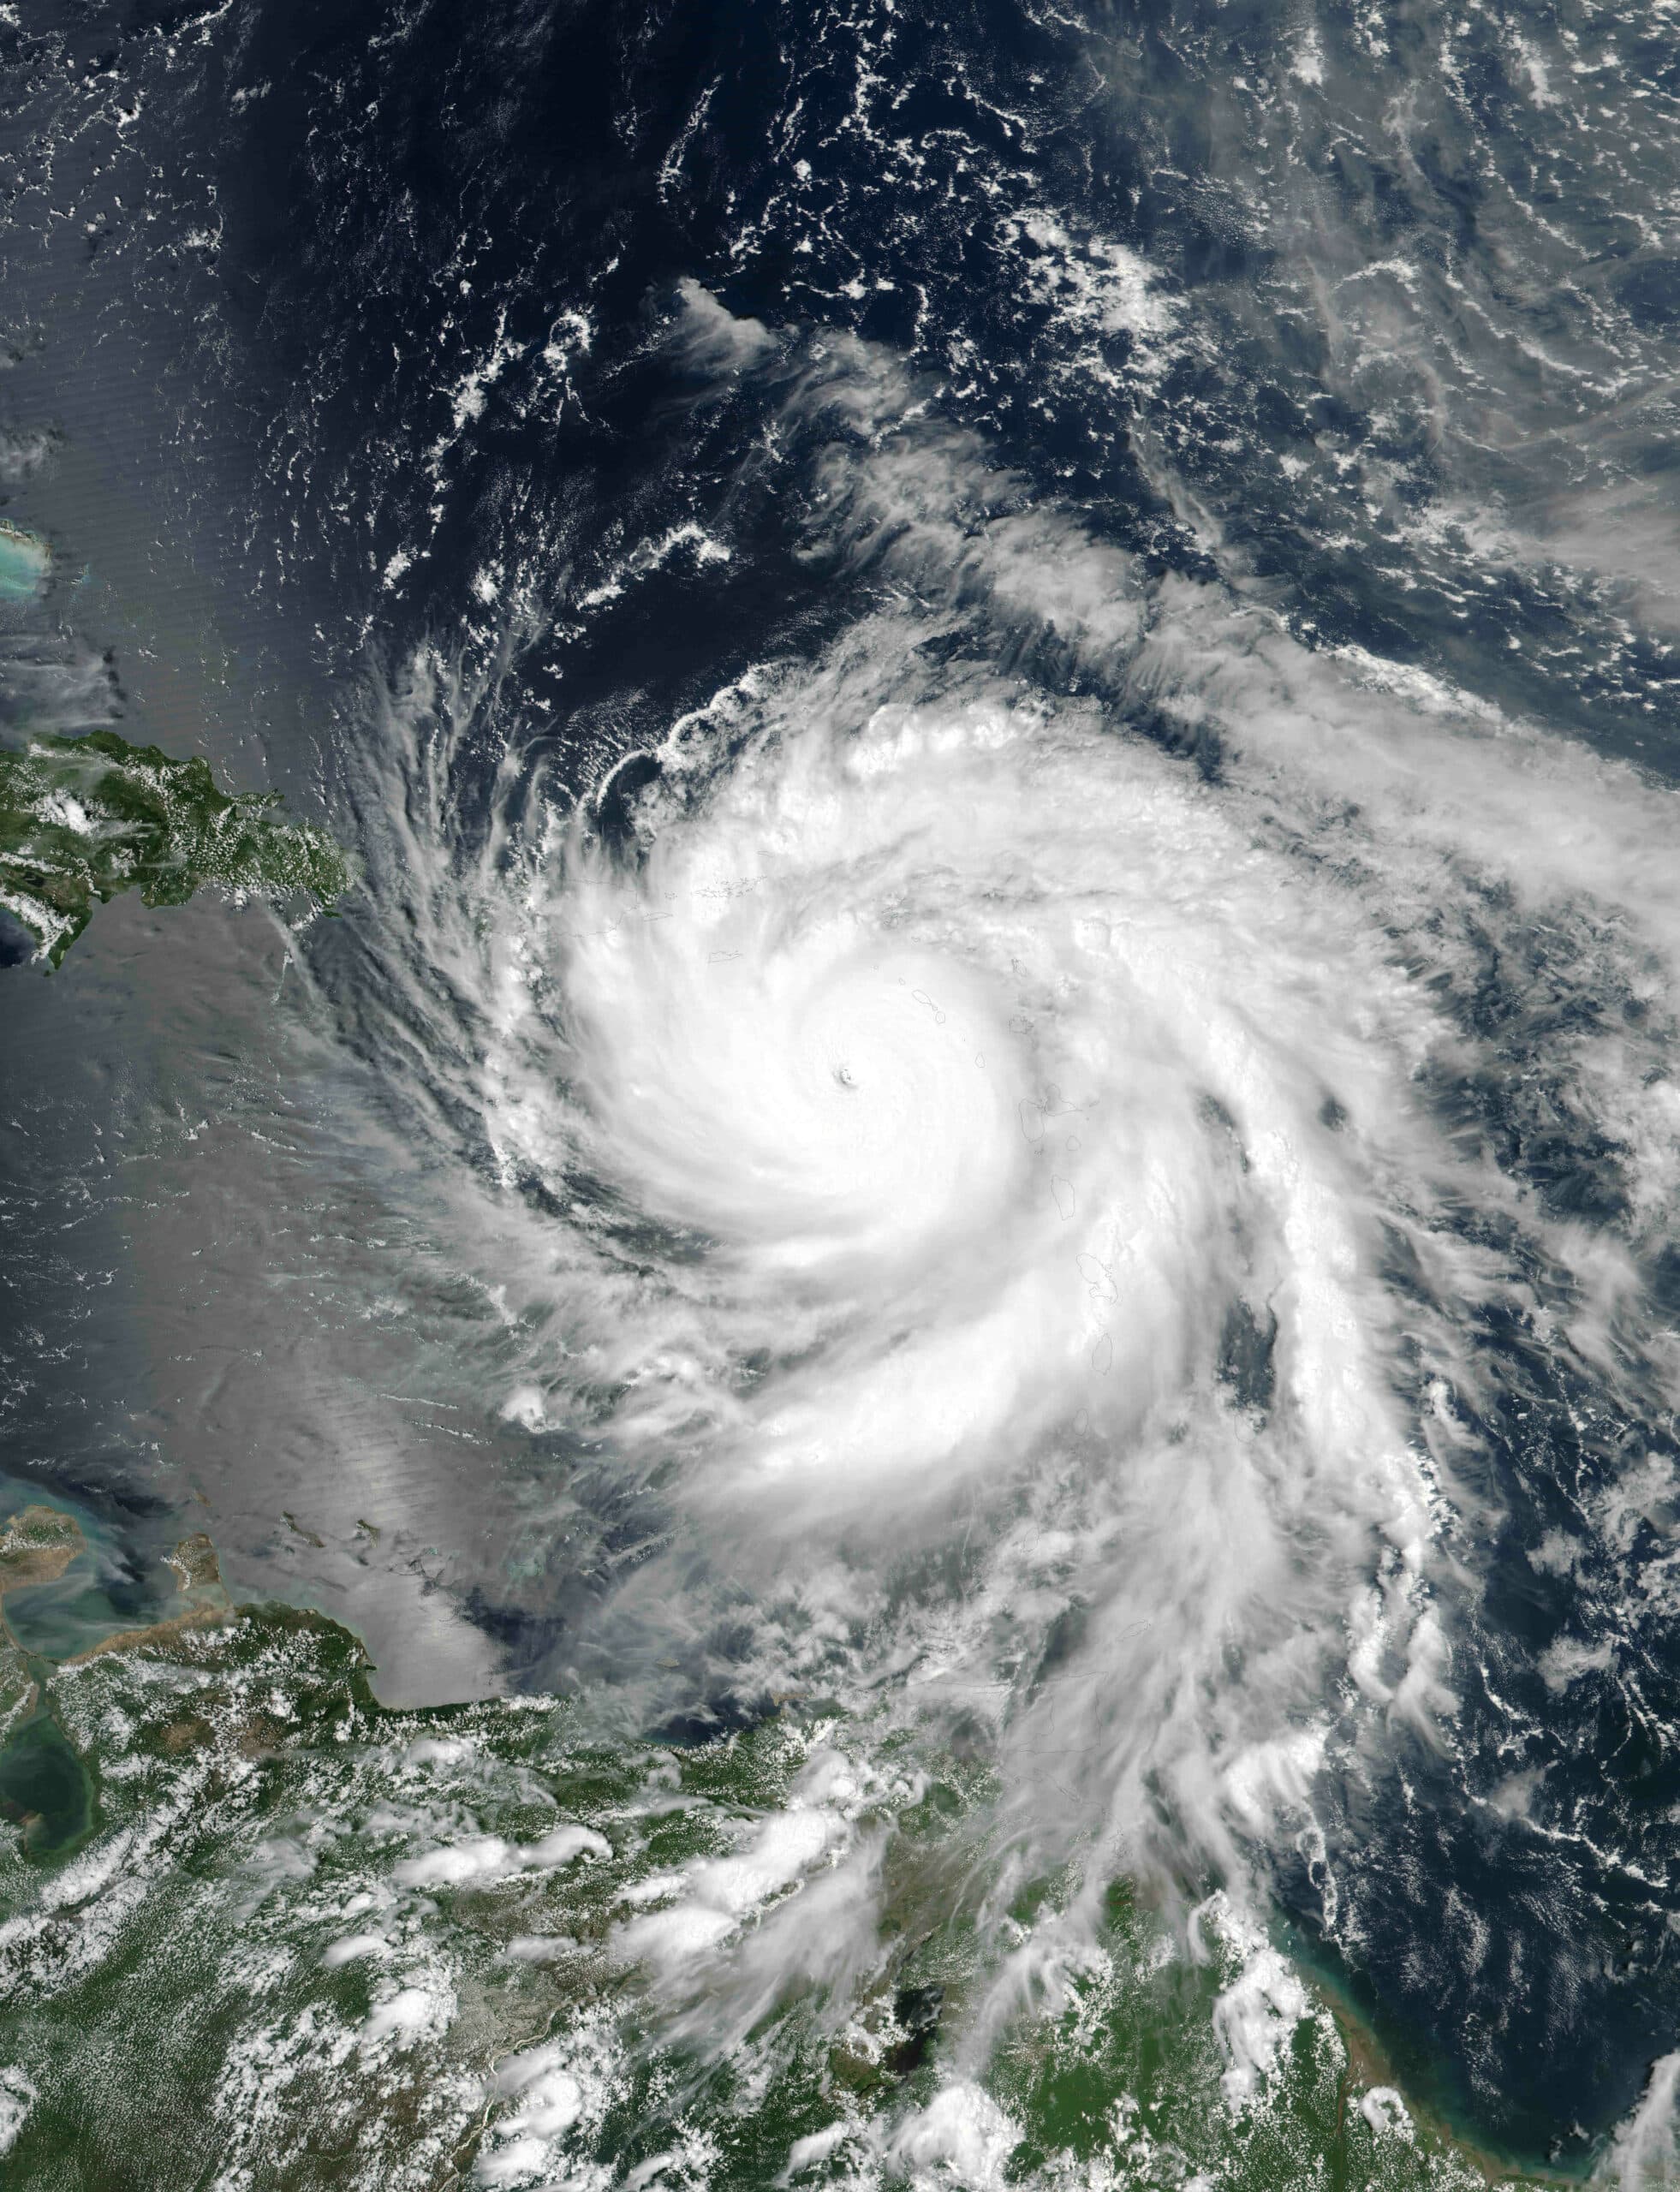 Gallery of imagini 1: Care este perioada ciclonilor în Martinica?